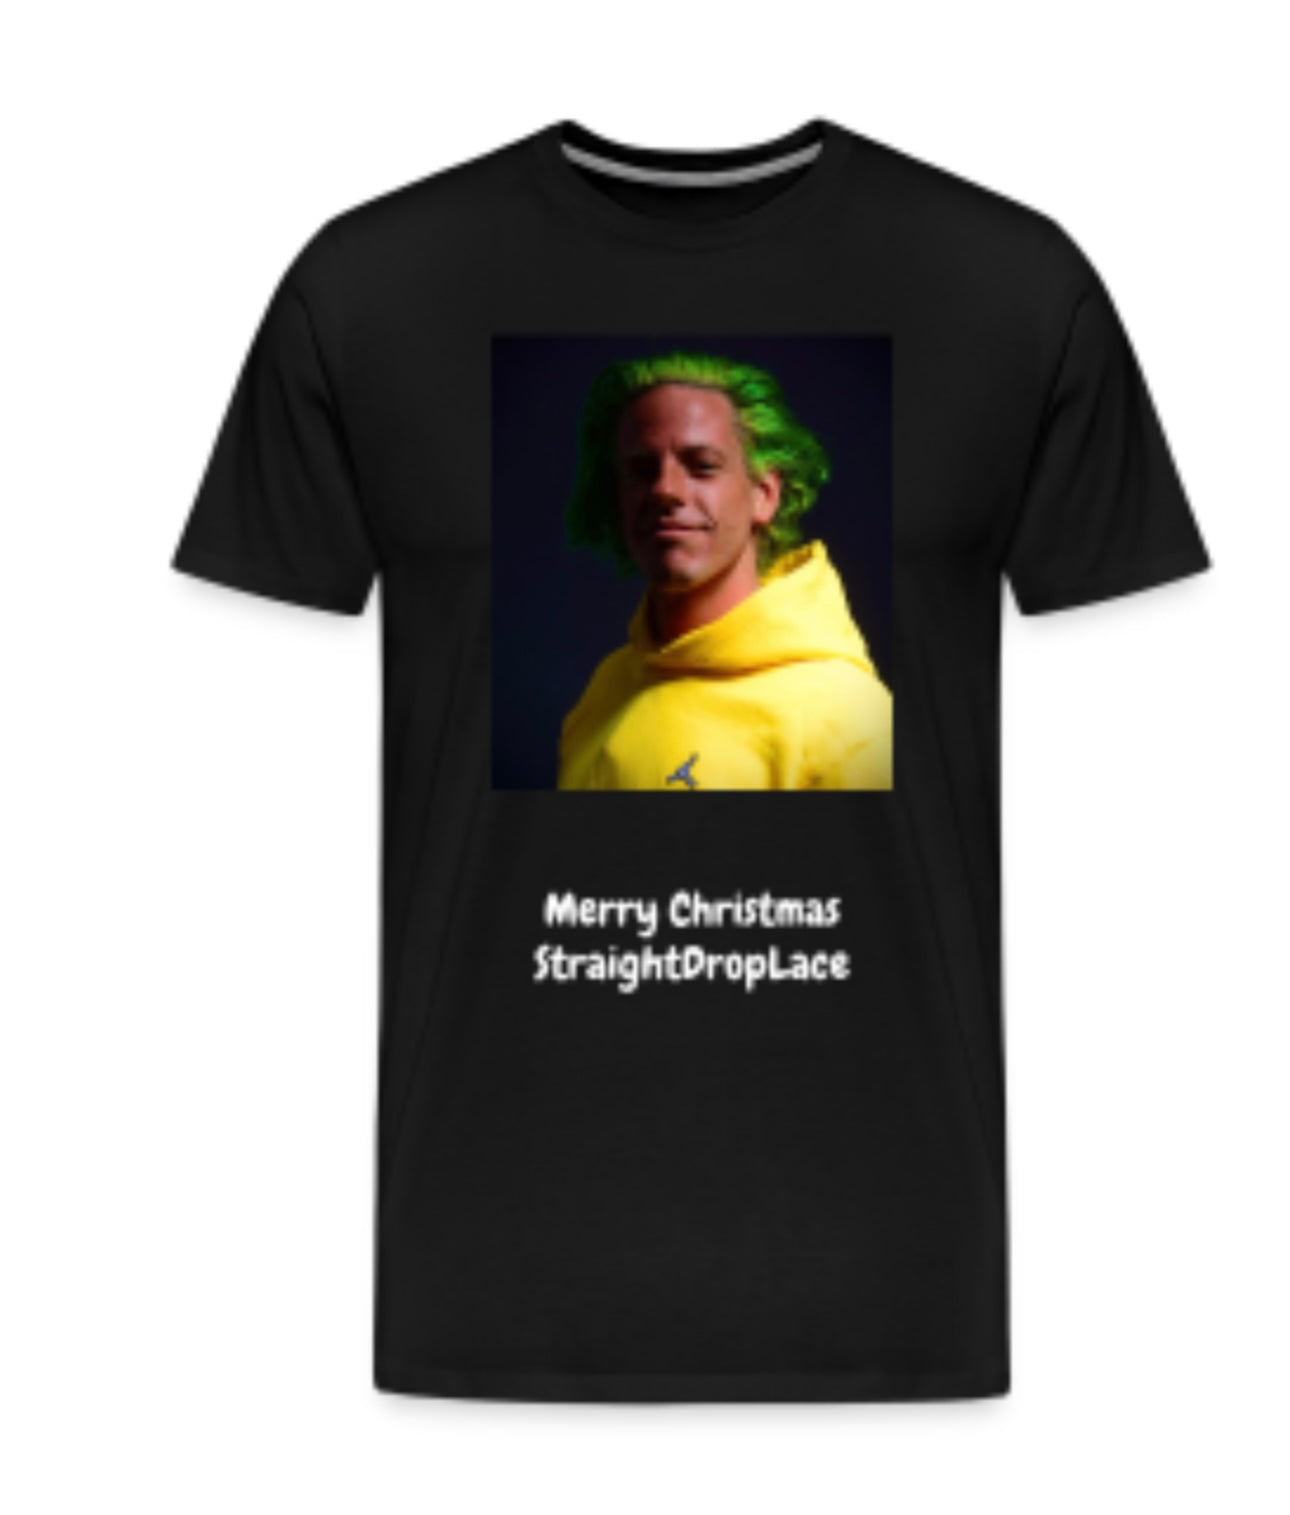 Joker family Christmas t-shirt